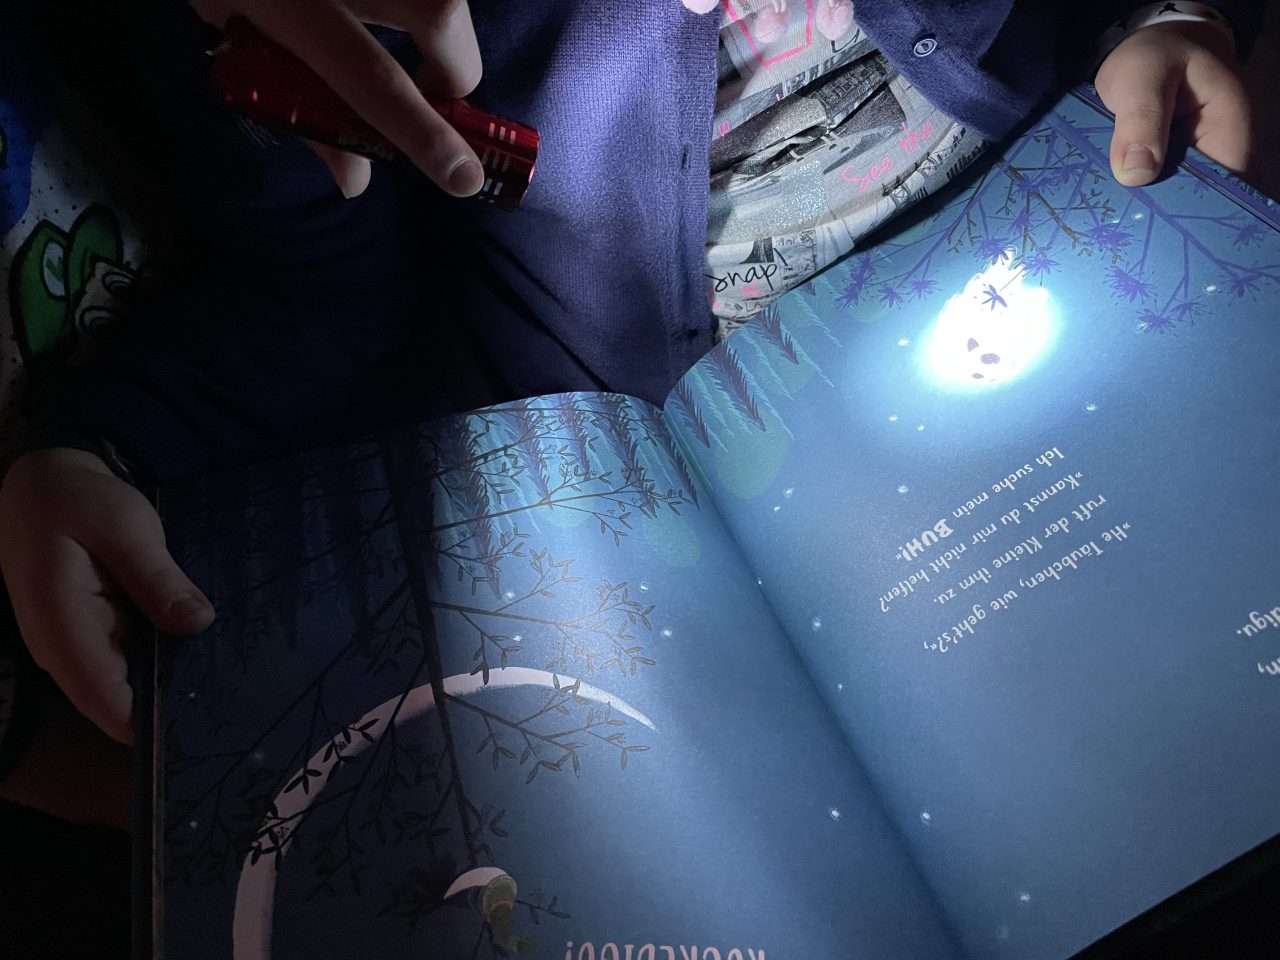 ein Kind, was kaum zusehen ist, hält das Kinderbuch "Der kleine Geist, der sein BUH verlor" und ein zweites Kind hält eine Taschenlampe auf die Seite gerichtet